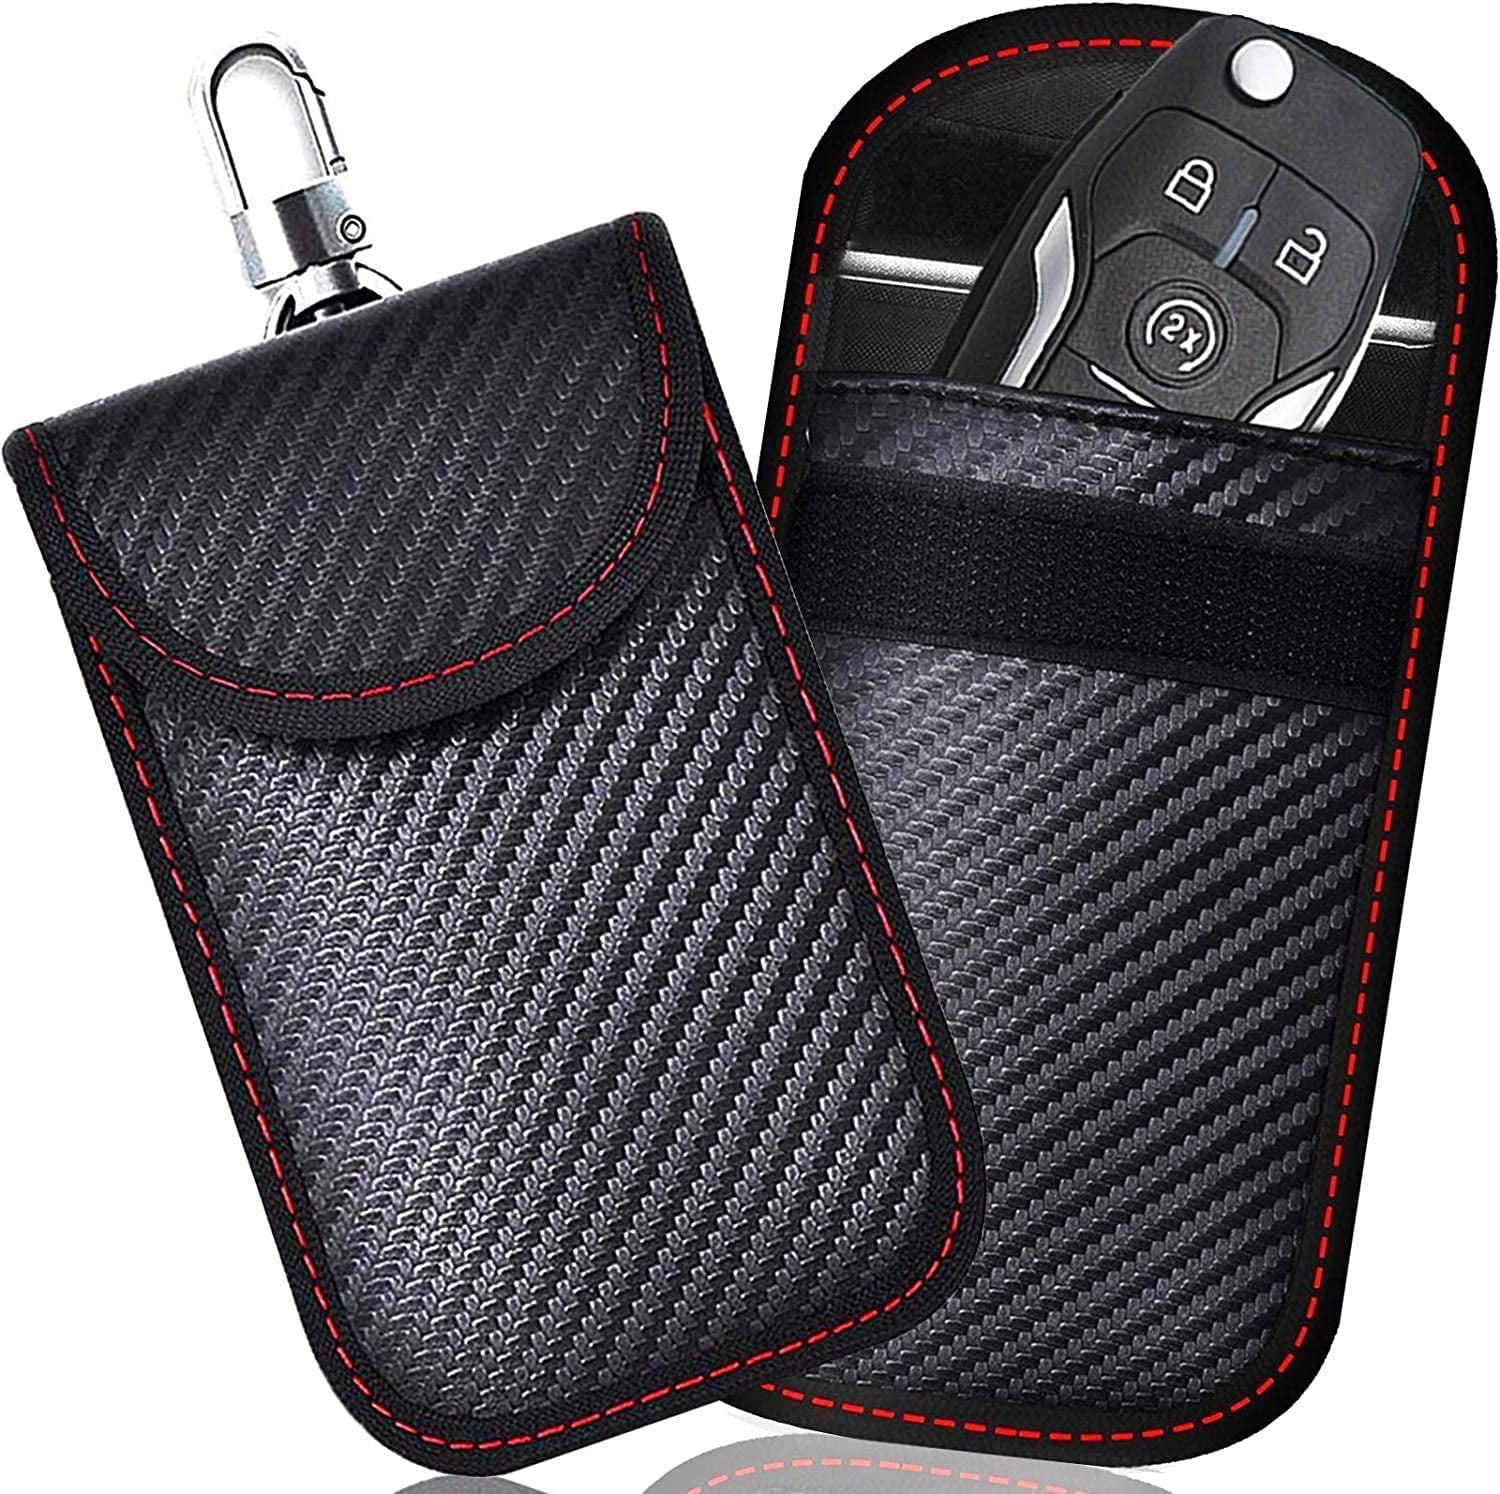 Car Key Signal Blocking Pouch RFID Blocker Bag for Car Key Radio Key Shielding Theft Protection 2 Pack Faraday Bag Keyless Entry Car Keys Case 